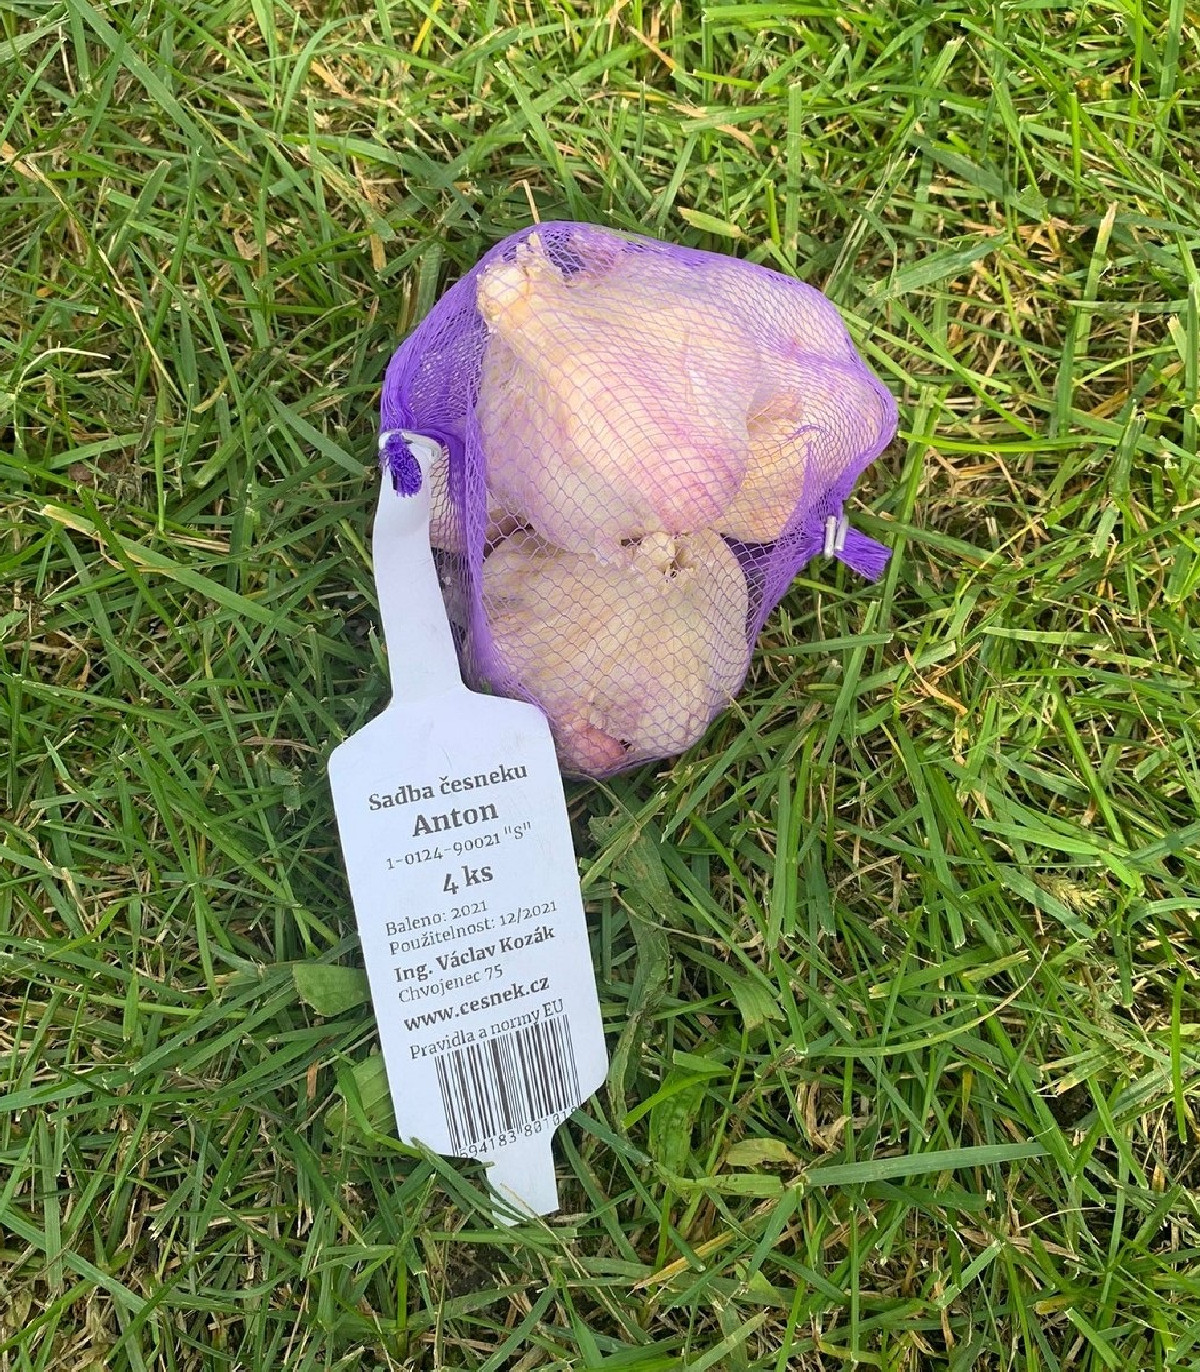 Sadbový cesnak Anton - Allium sativum - nepaličiak - cibule cesnaku - 1 balenie